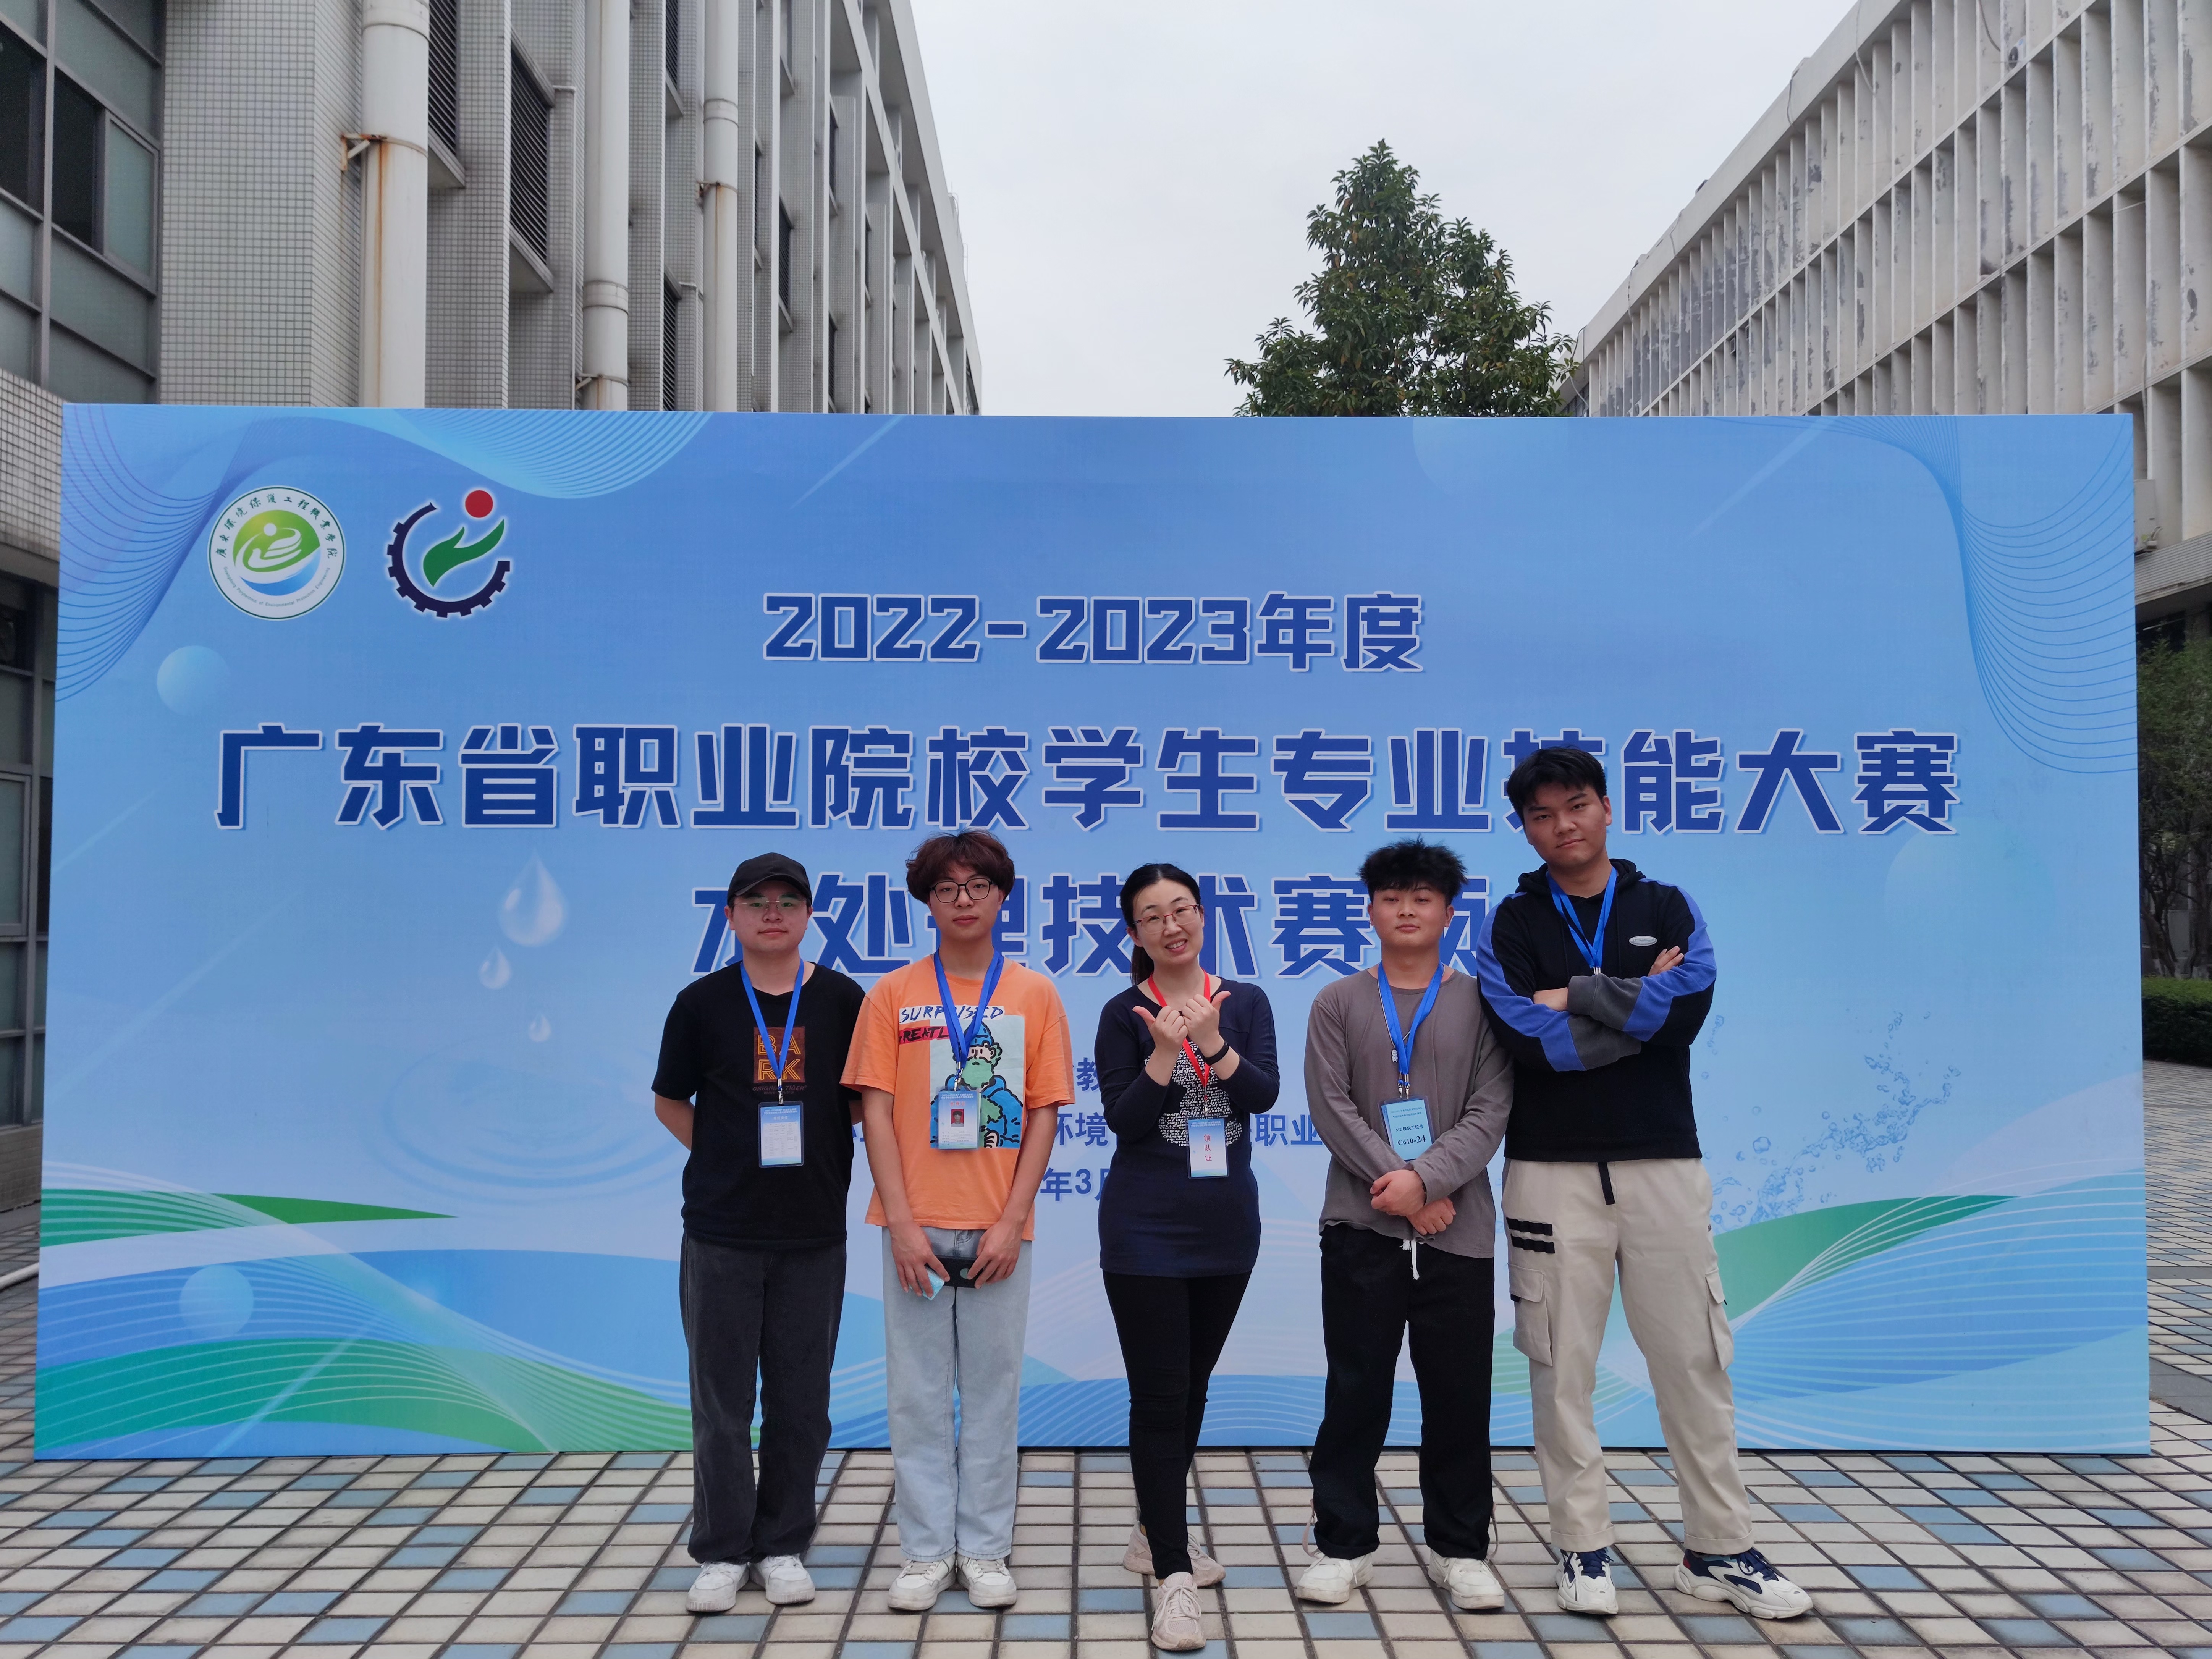 輕工與材料學院代表隊榮獲廣東省職業院校學生專業技能大賽“水處理技術”賽項二、三等獎